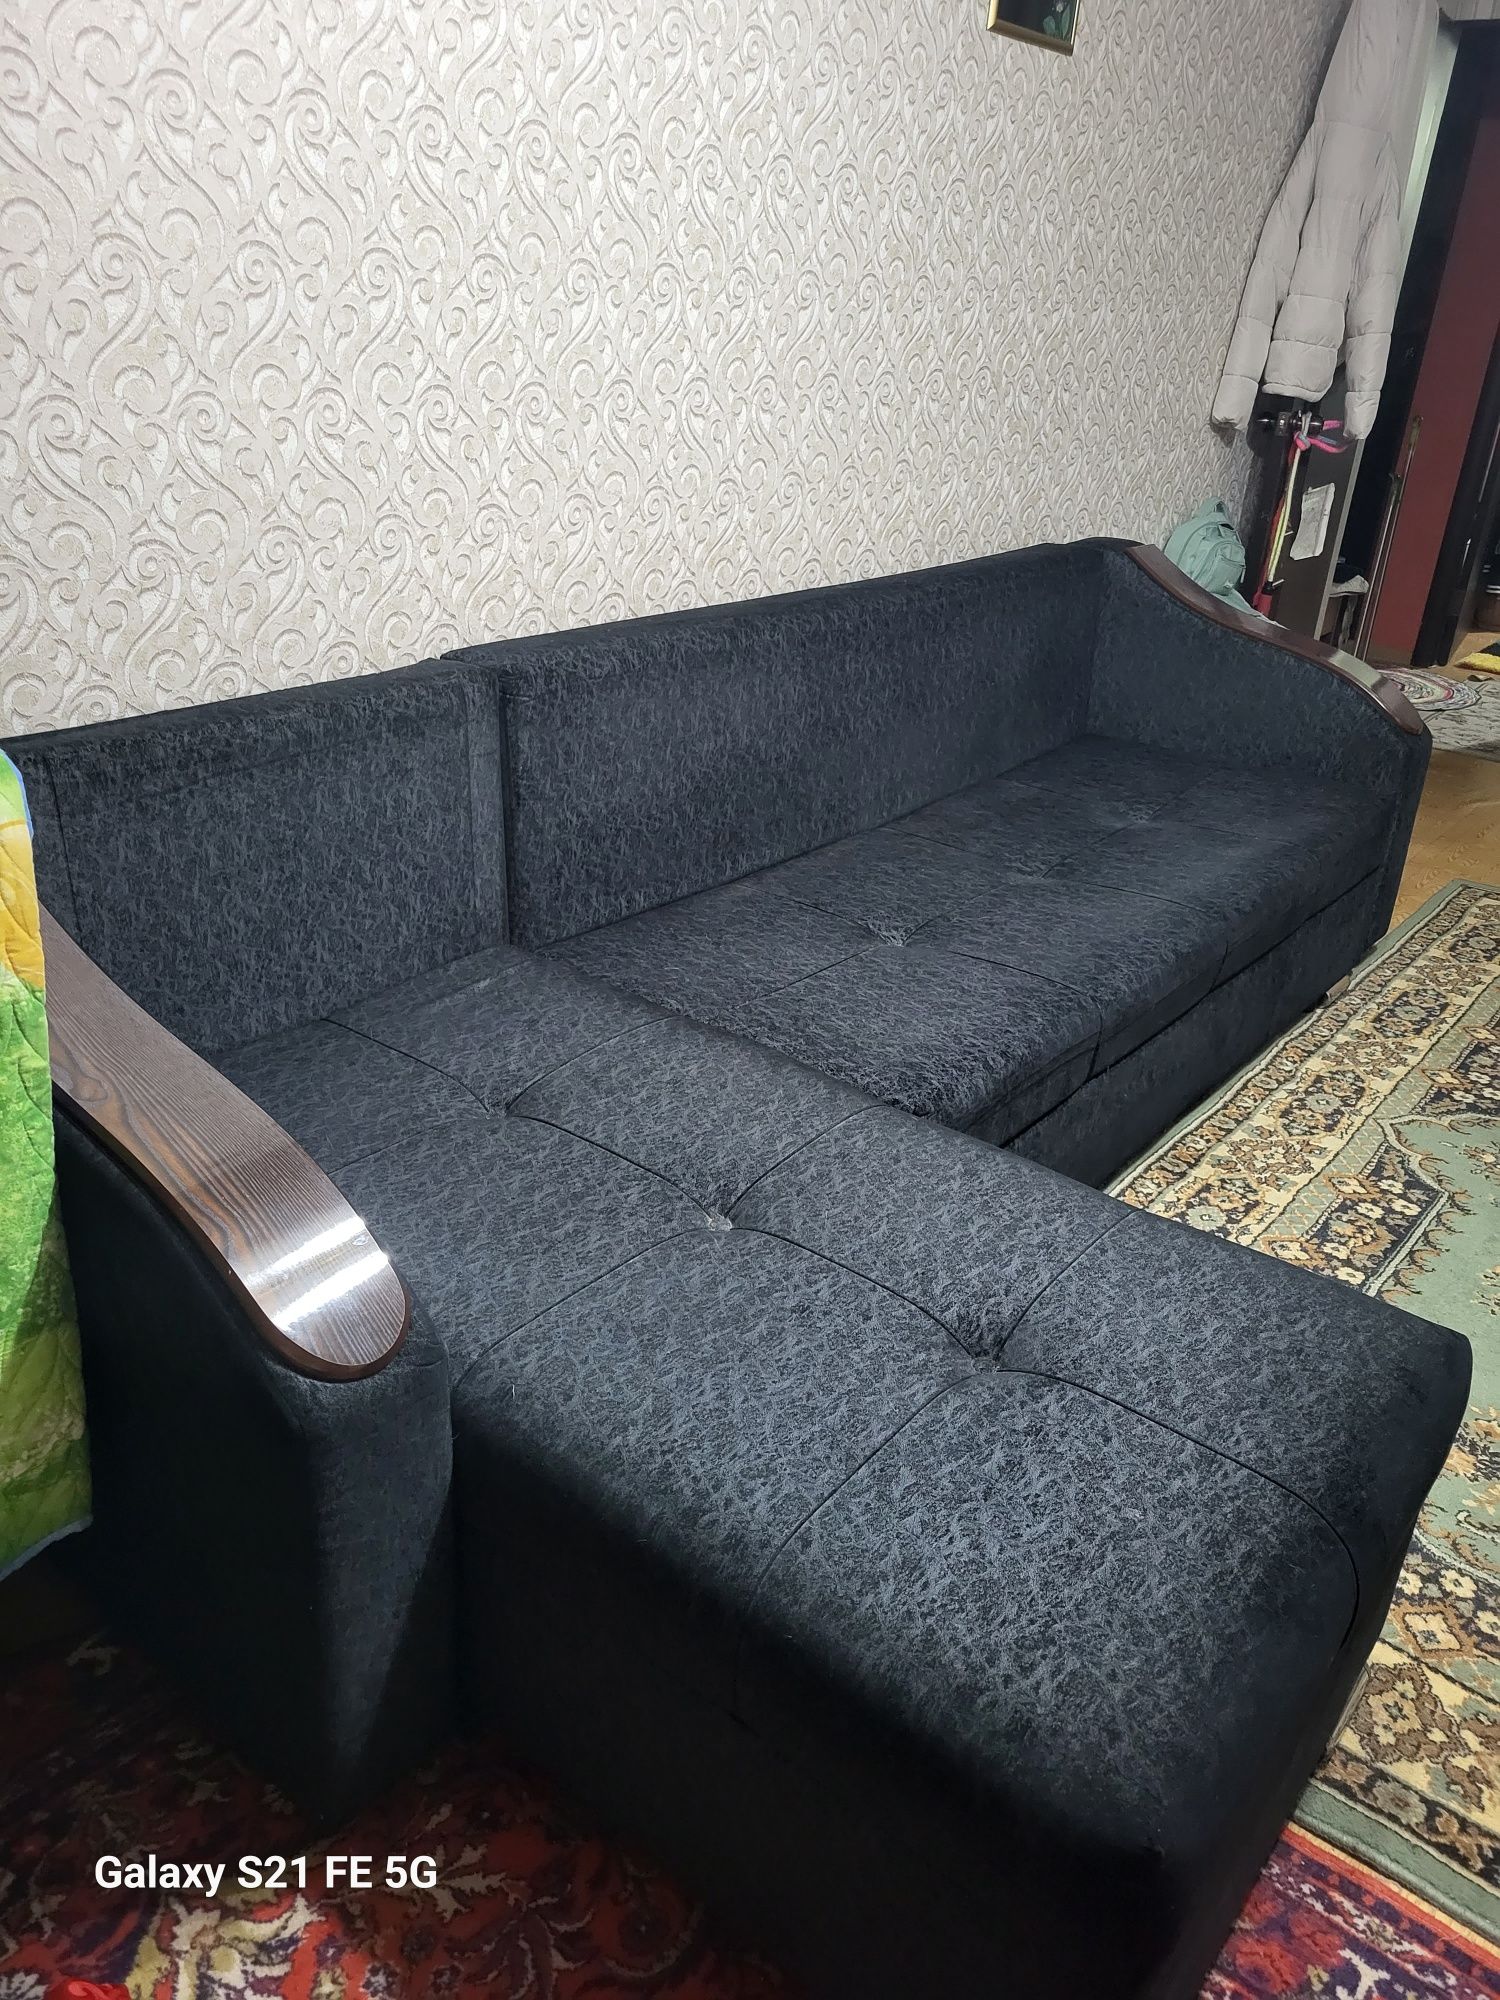 Продам диван в идеальном состоянии, разборный. В связи с переездом